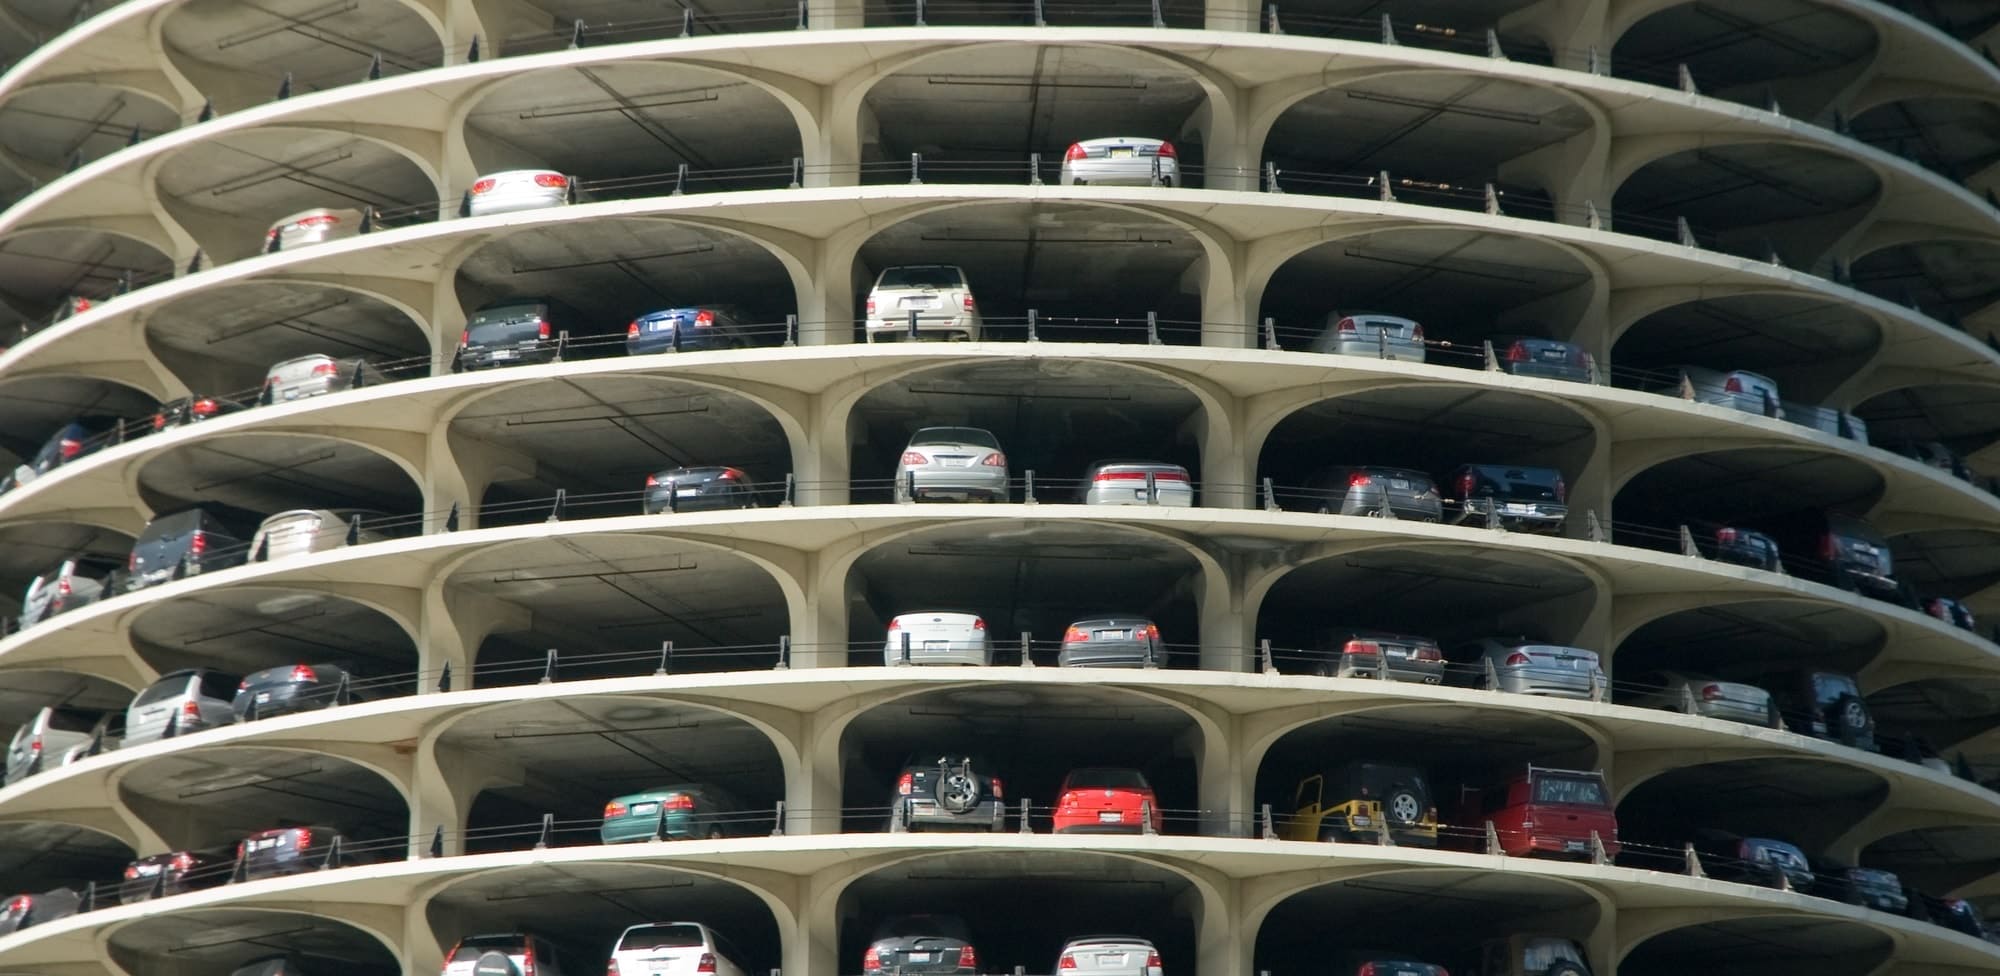 Автомобильные парковки из стали: история и перспективы